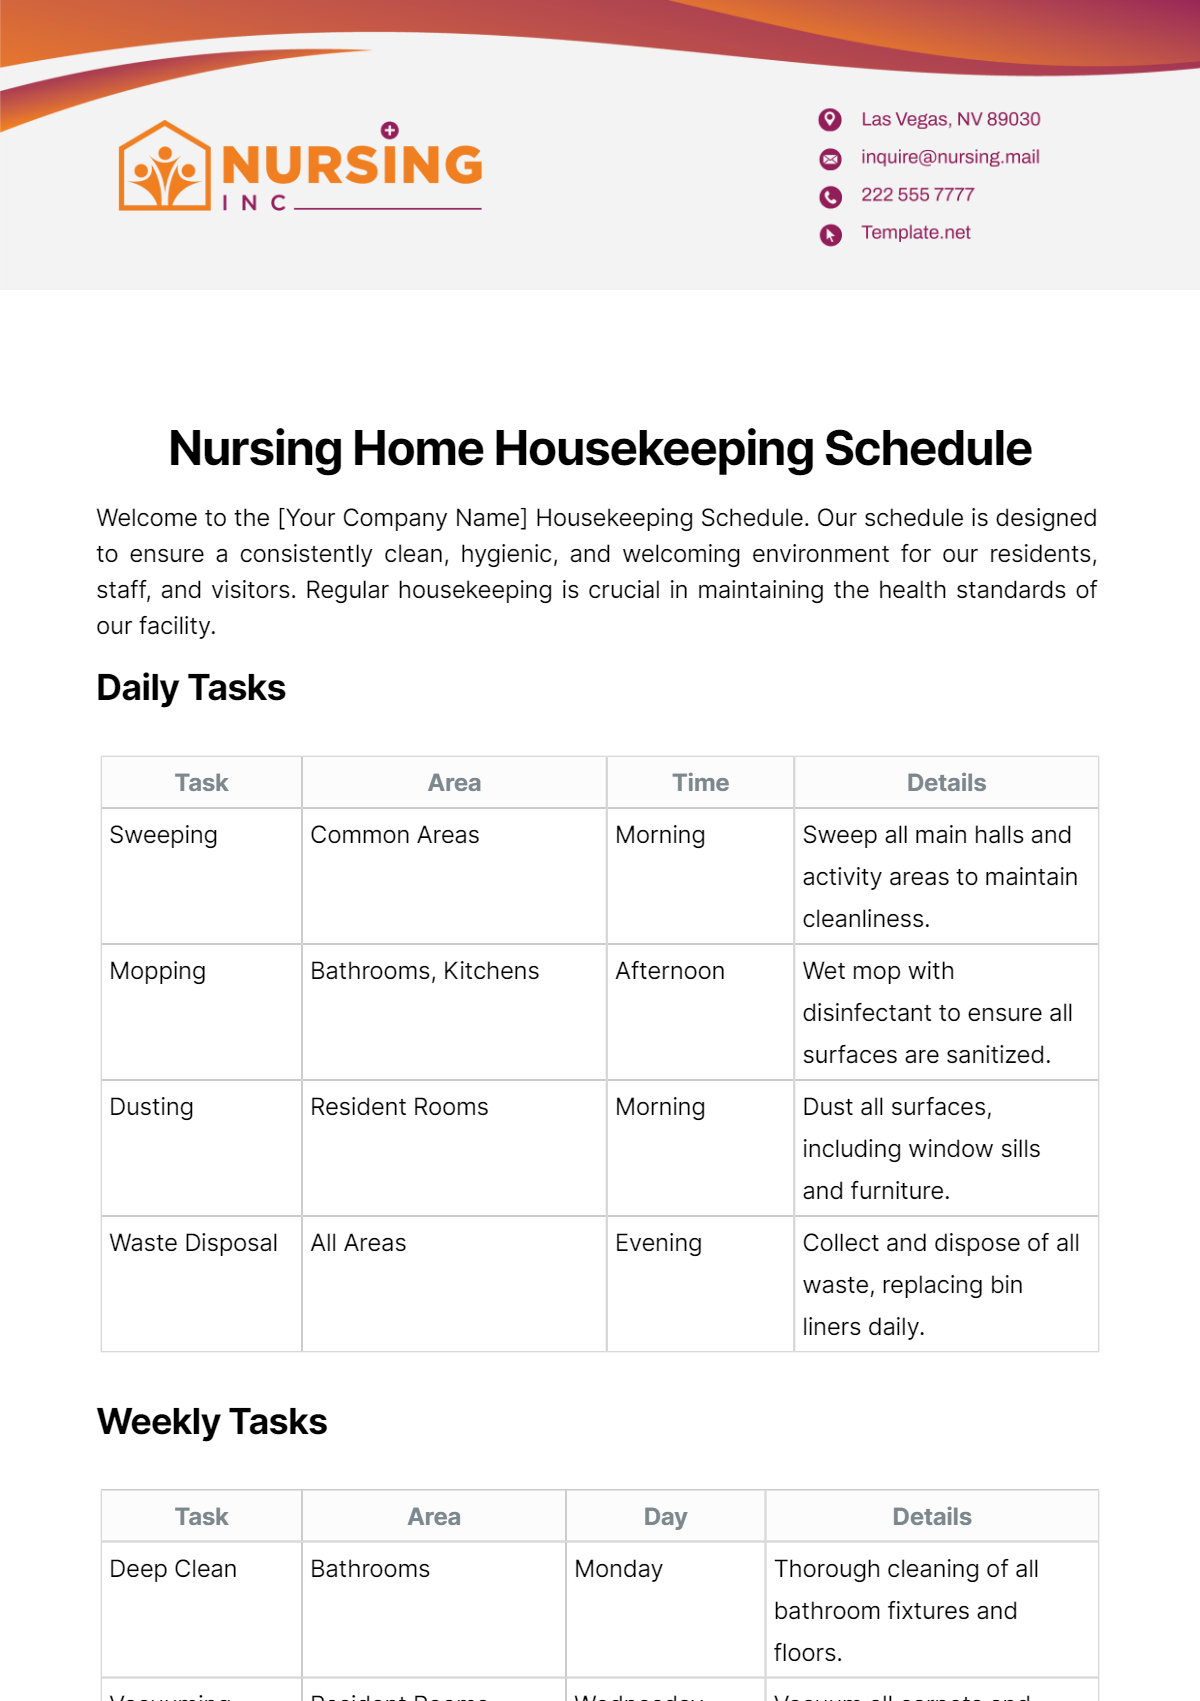 Nursing Home Housekeeping Schedule Template